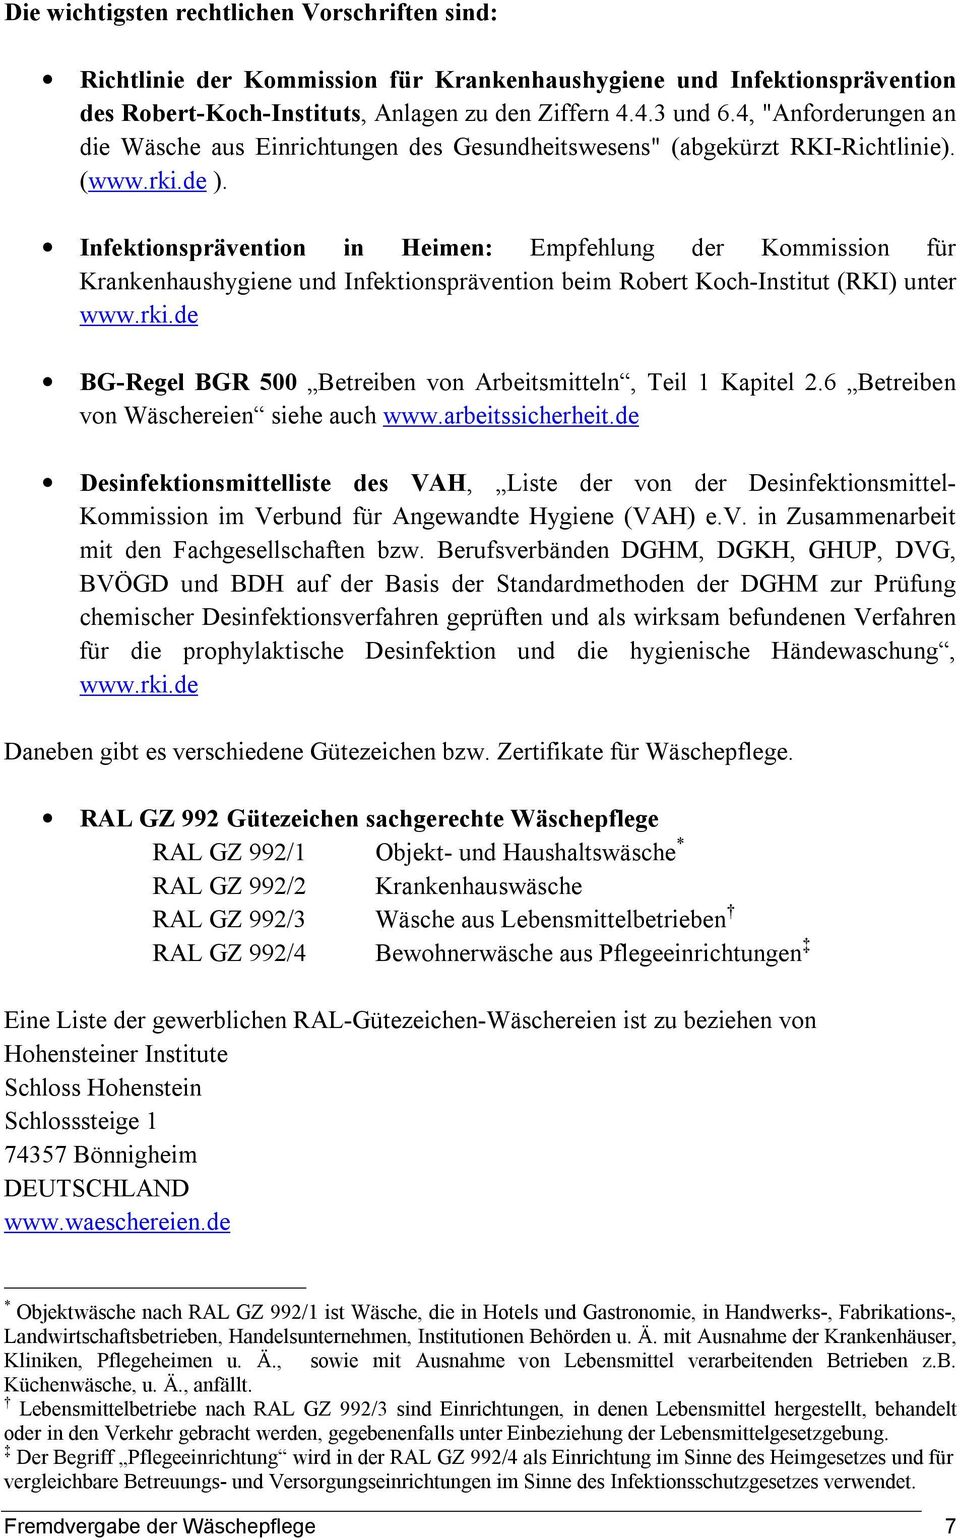 Infektionsprävention in Heimen: Empfehlung der Kommission für Krankenhaushygiene und Infektionsprävention beim Robert Koch-Institut (RKI) unter www.rki.